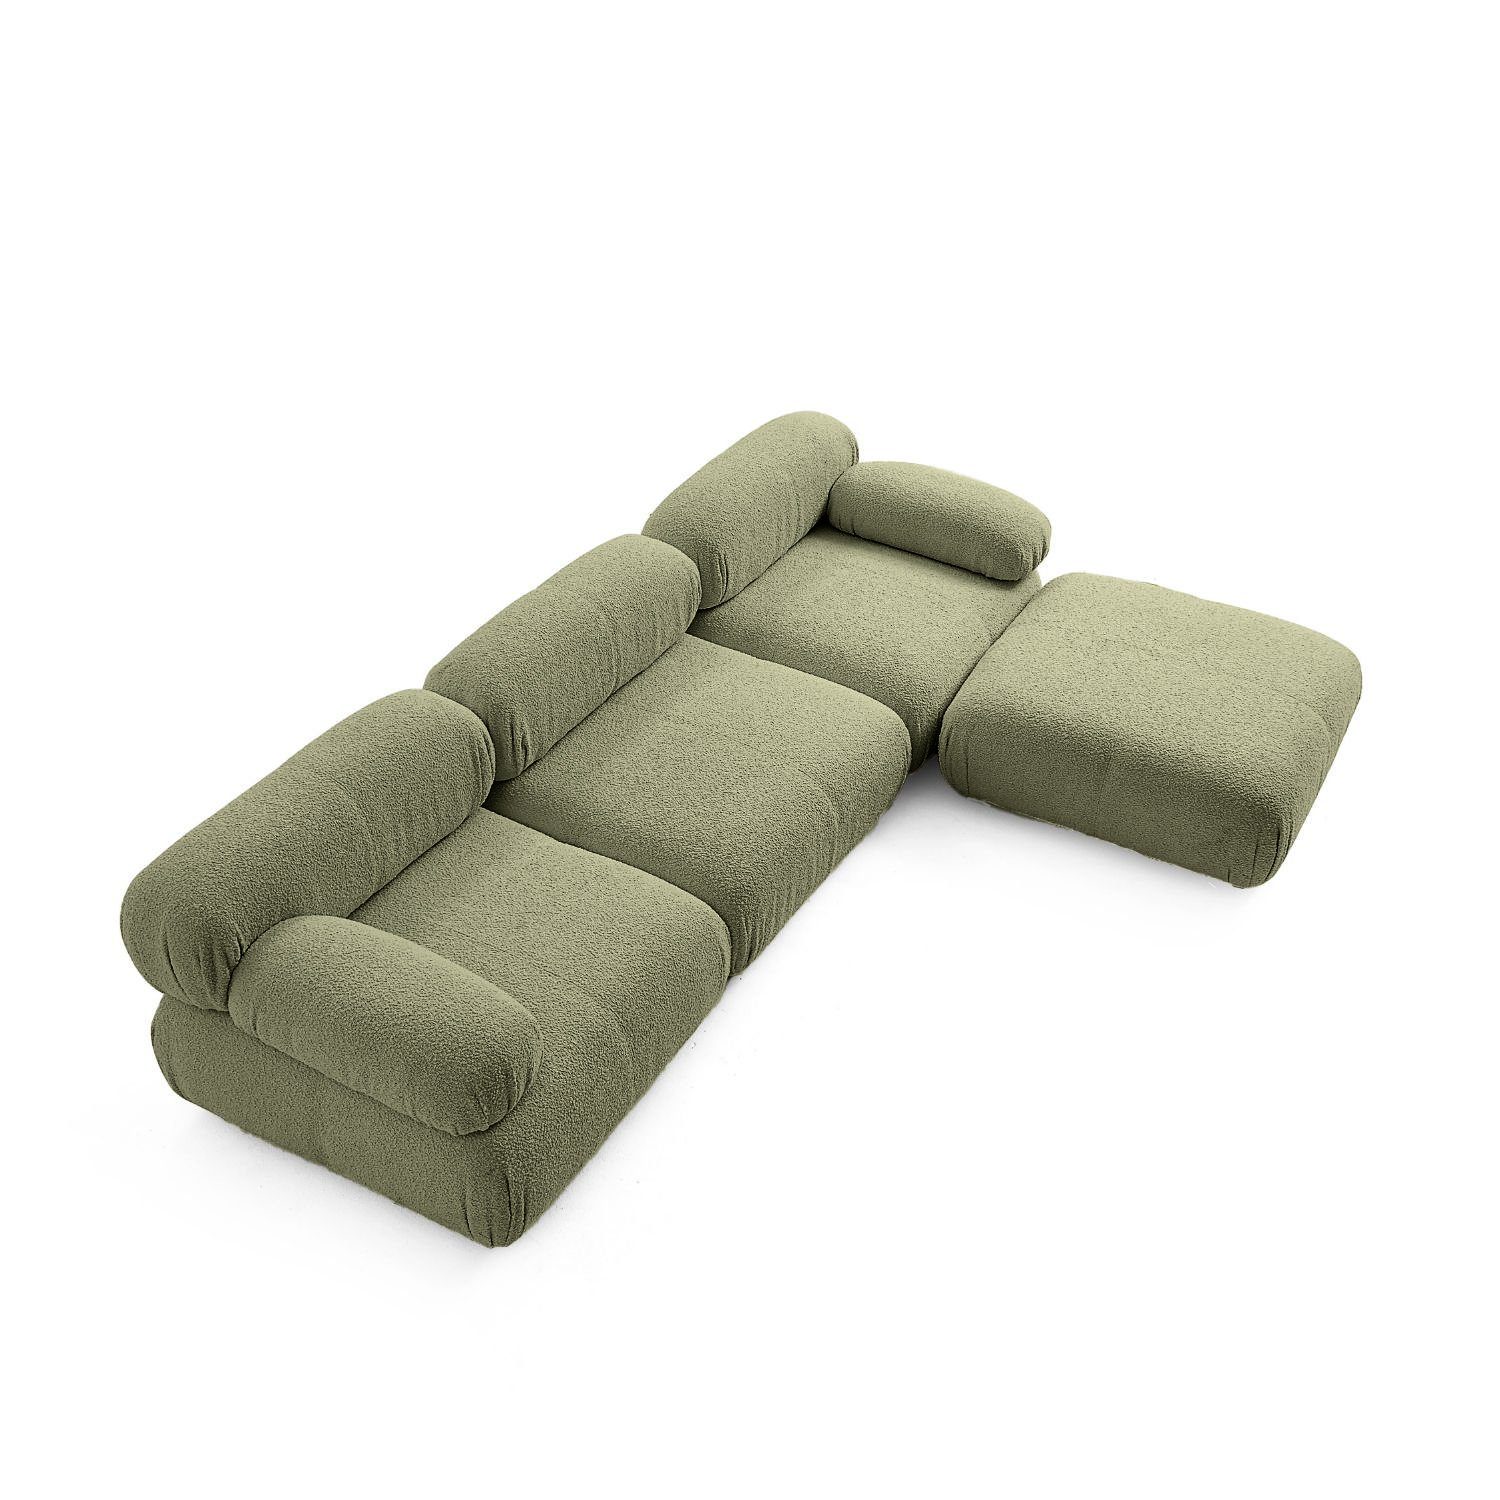 Knuffiges neueste enthalten! Dunkelgrün-Lieferung im aus Touch Aufbau me Komfortschaum Preis Sitzmöbel Generation Sofa und